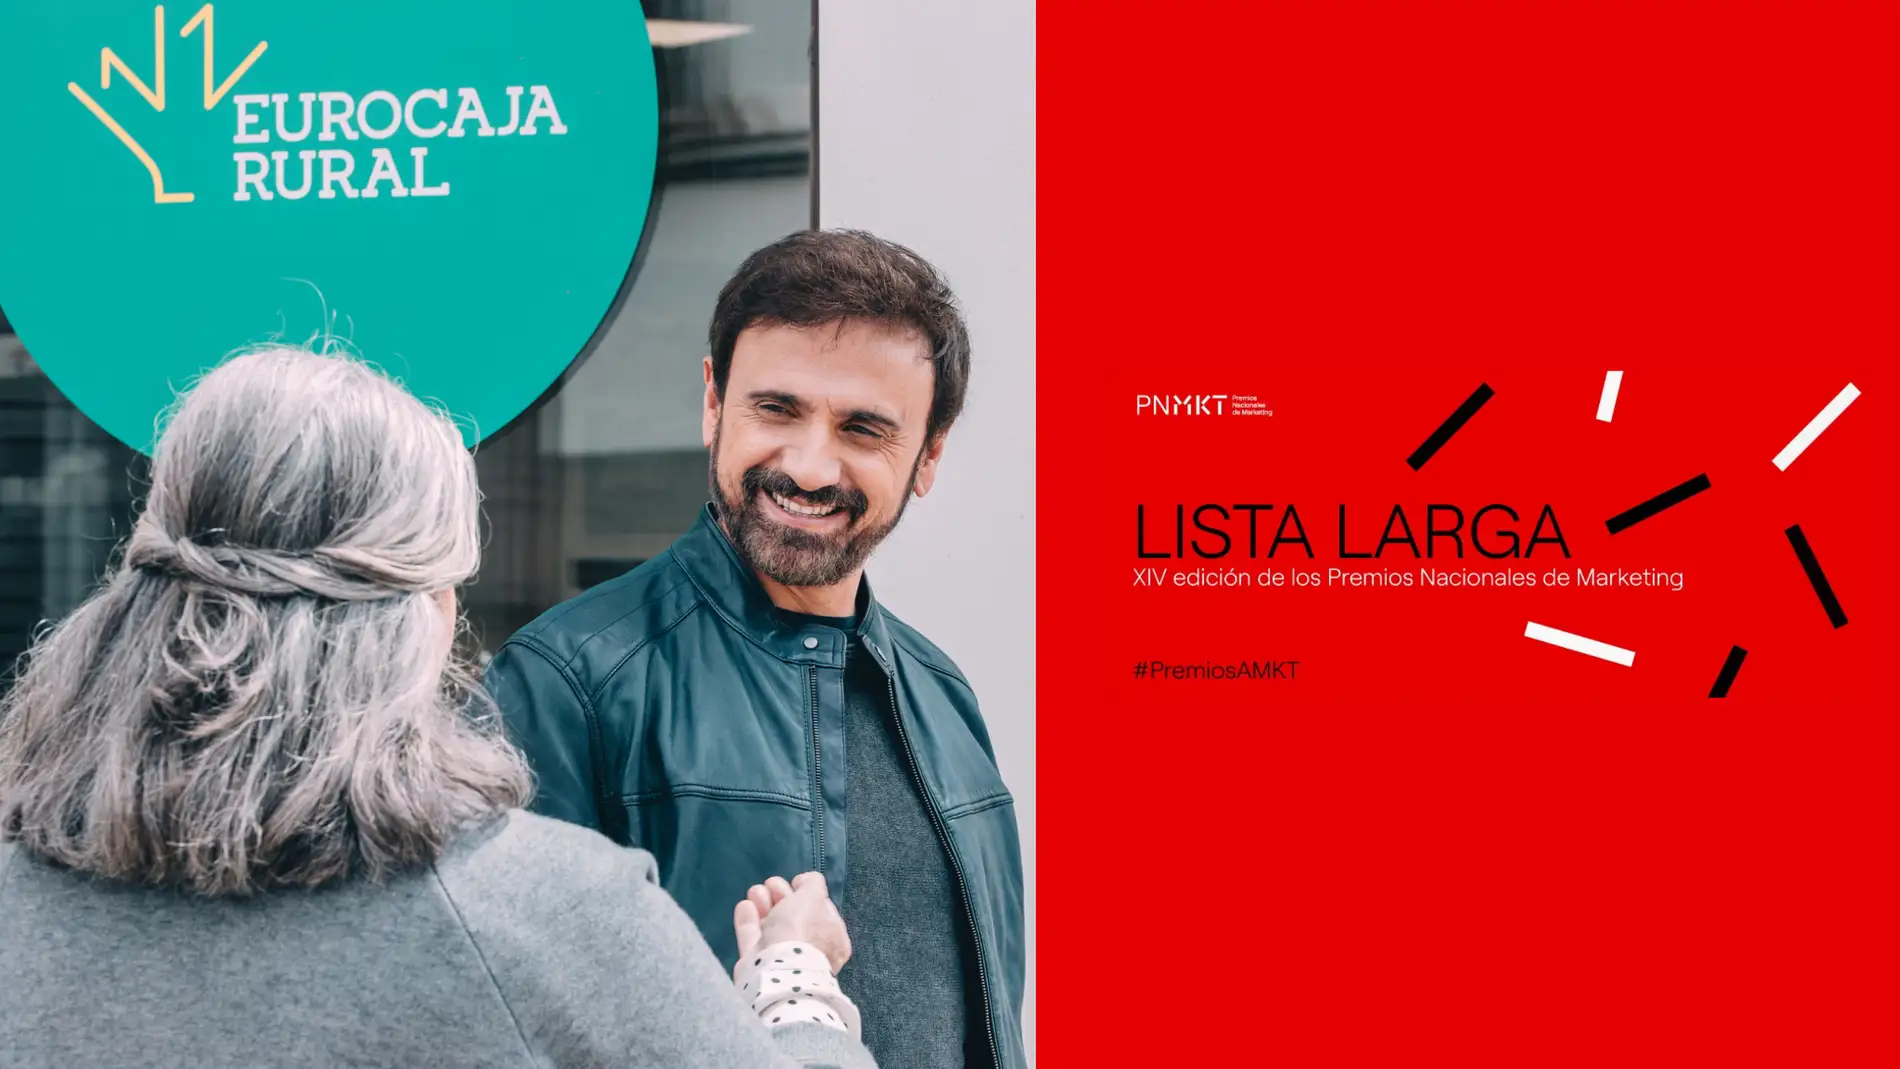 Eurocaja Rural nominada a los Premios Nacionales de Marketing por su campaña 'El Motivo de Jose'